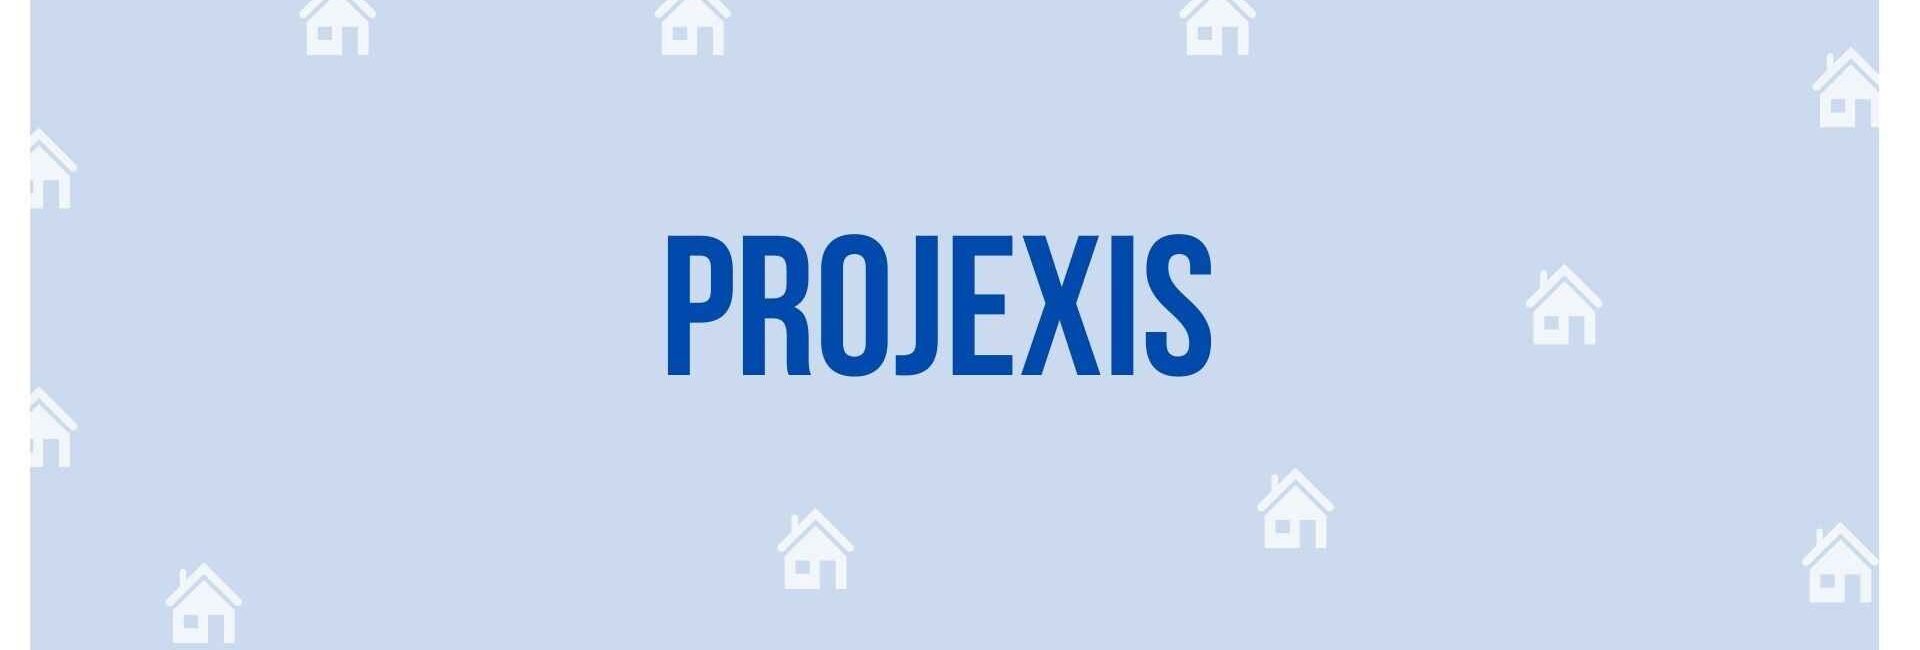 Projexis - Property Dealer in Noida